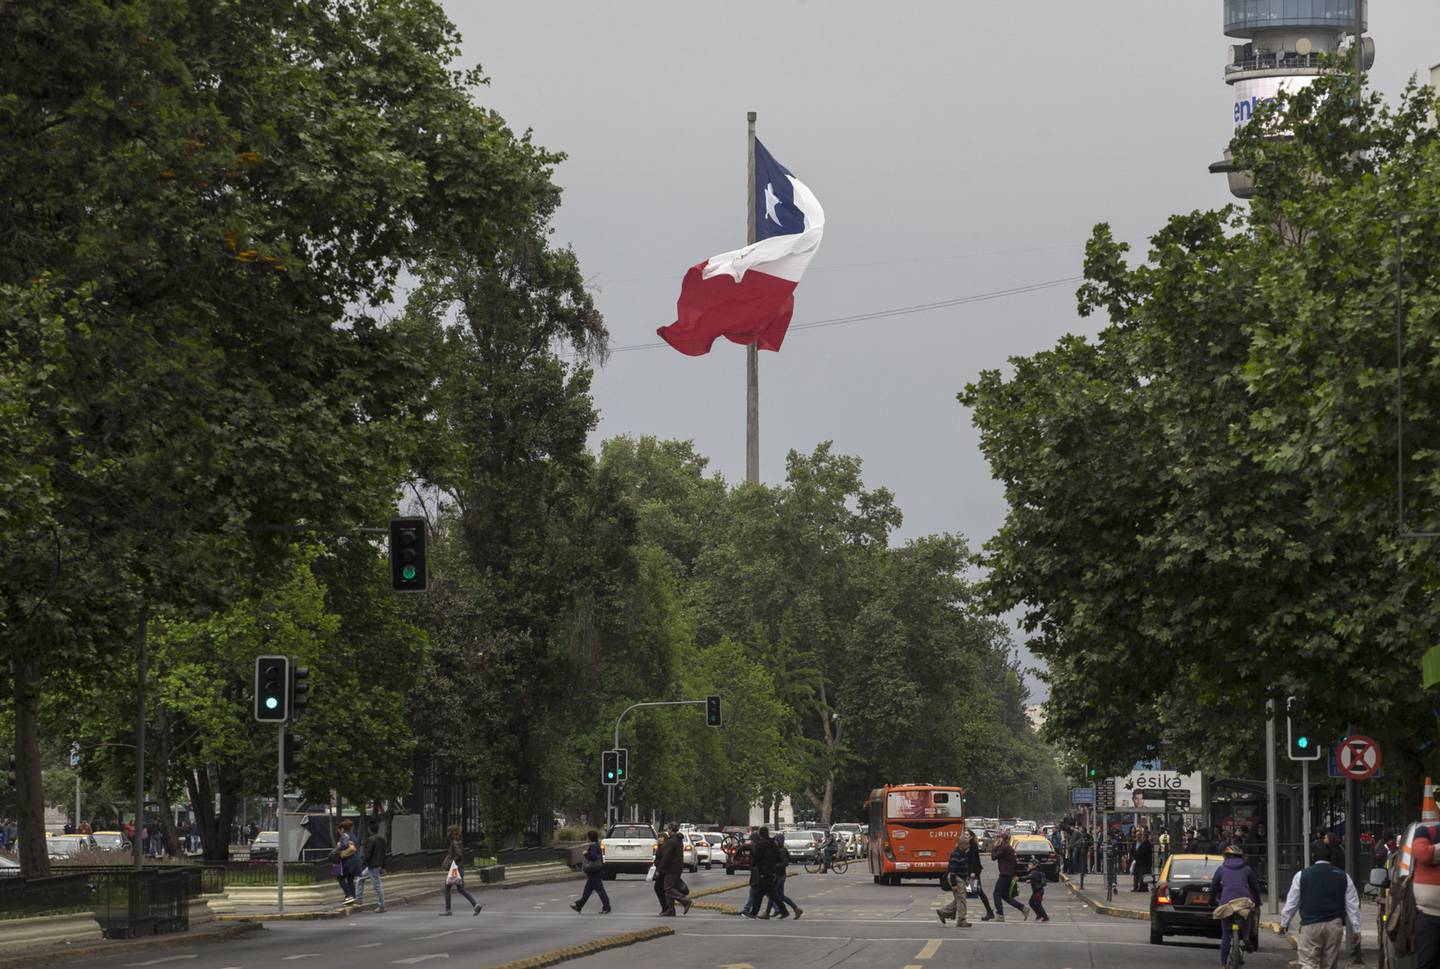 La bandera chilena ondea mientras los peatones cruzan una carretera en Santiago, Chile, el sábado 15 de octubre de 2016. Fotógrafo: Luis Enrique Ascui/Bloombergdfd